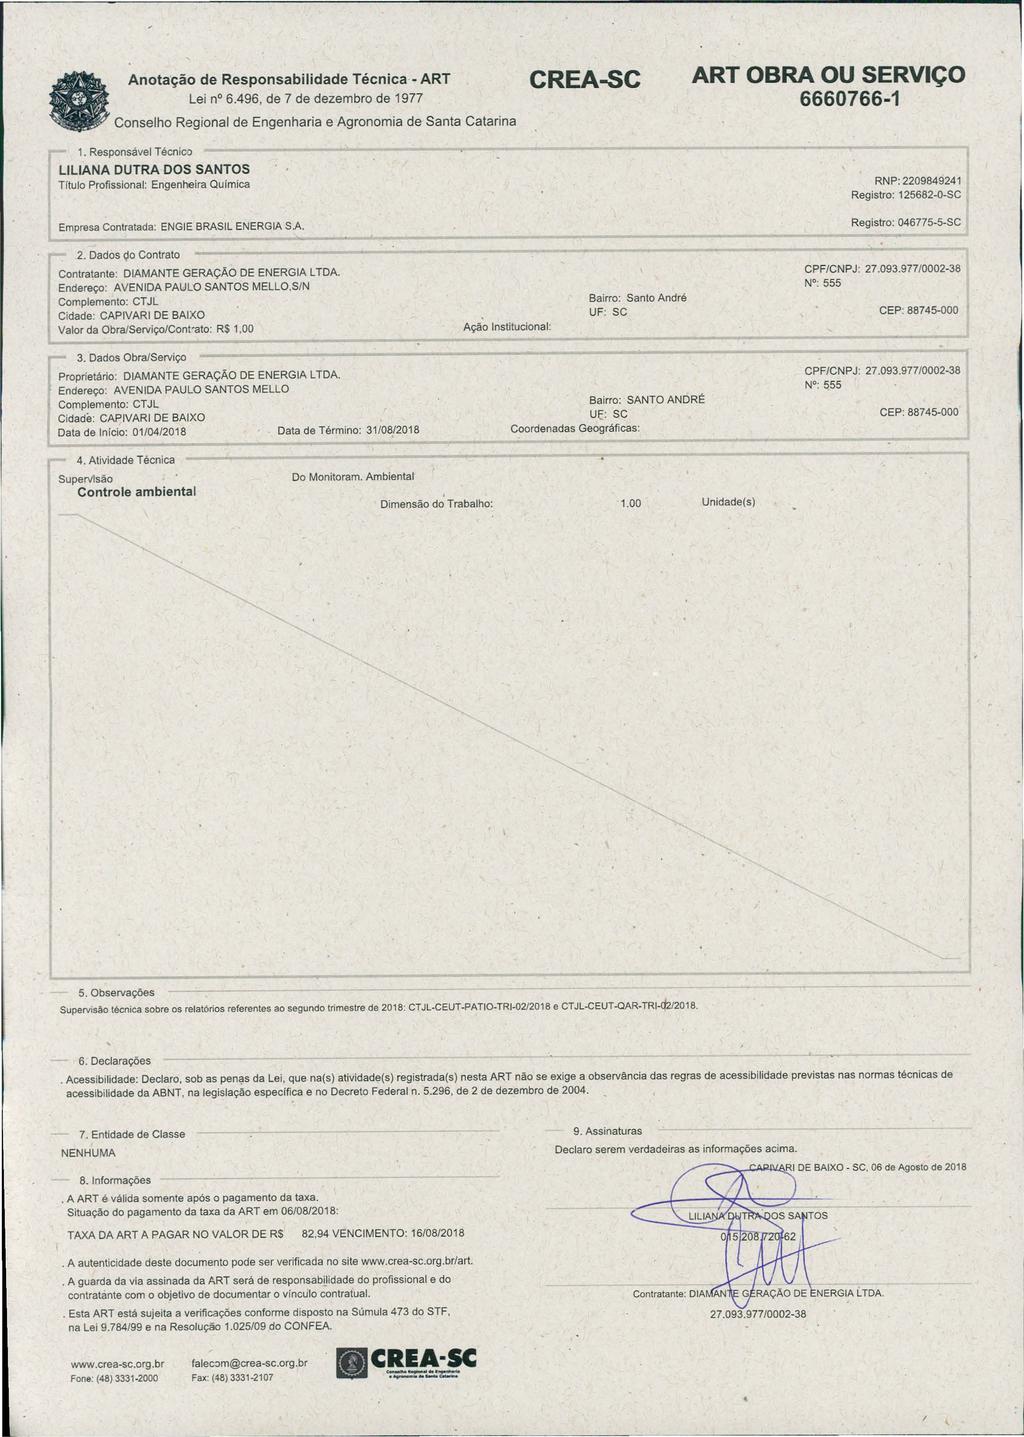 Anota ção de Responsabilidade Técnica - ART Lei n 6.496, de 7 de dezembro de 1977 Conselho Regional de Engenharia e Agronomia de Santa Catarina CREA-SC ART OBRA OU SERVIÇO 6660766-1 1.